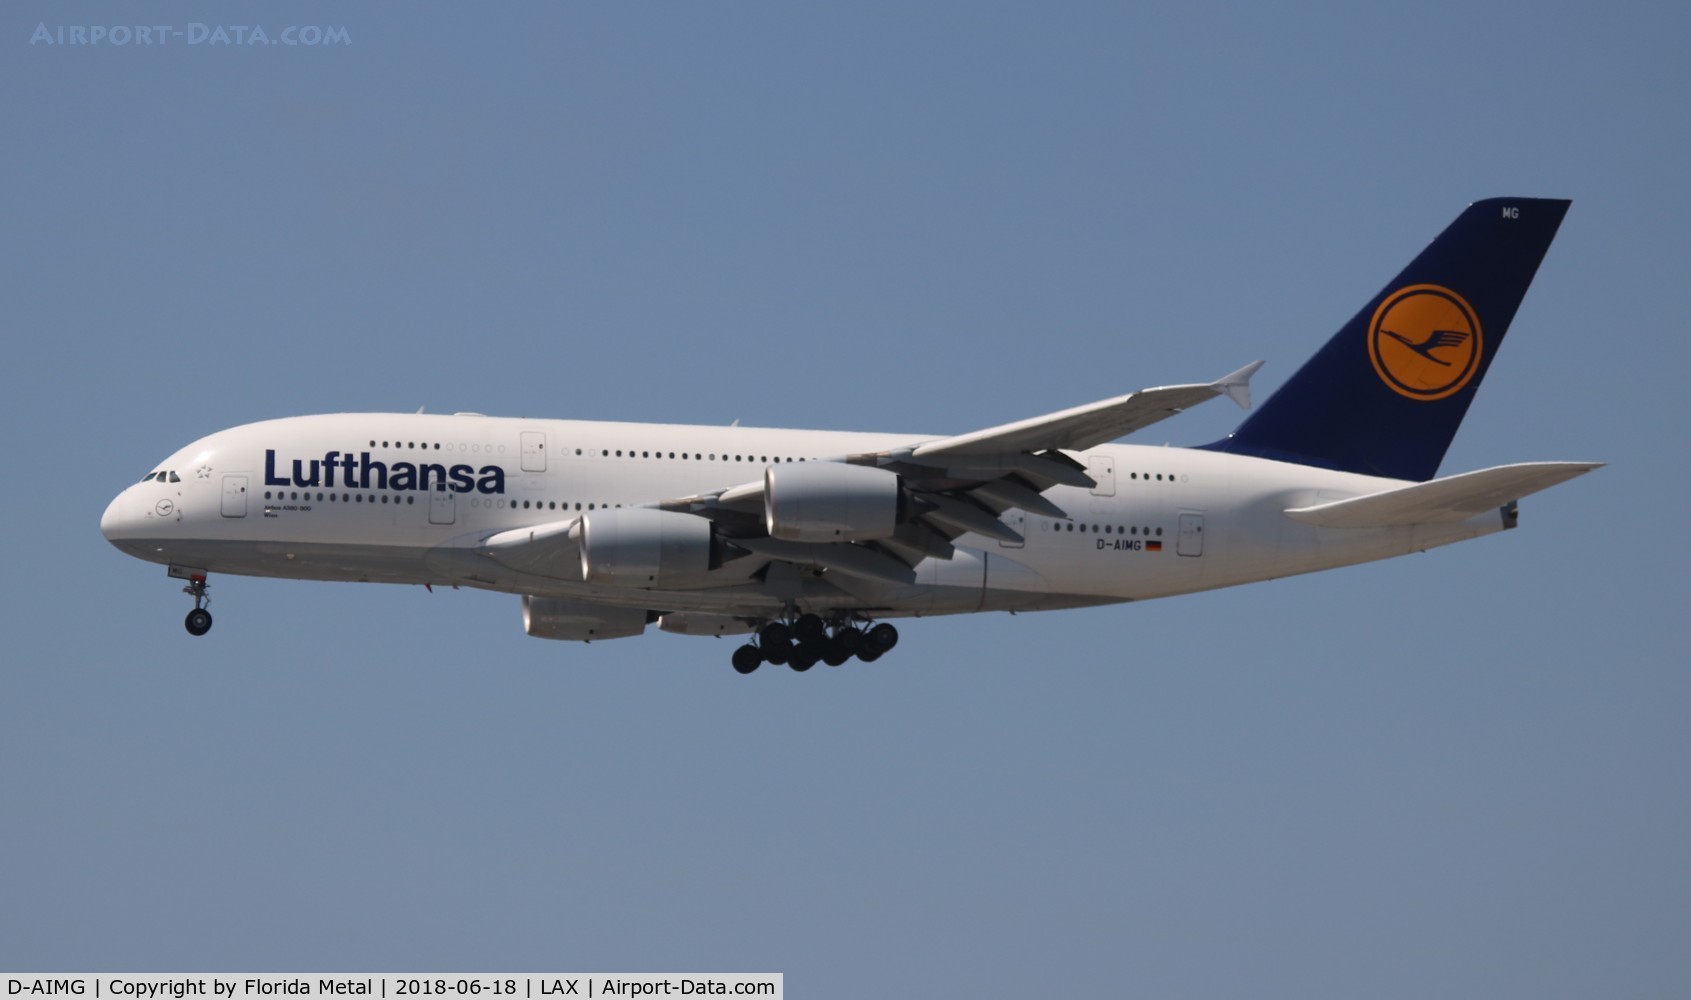 D-AIMG, 2011 Airbus A380-841 C/N 069, Lufthansa